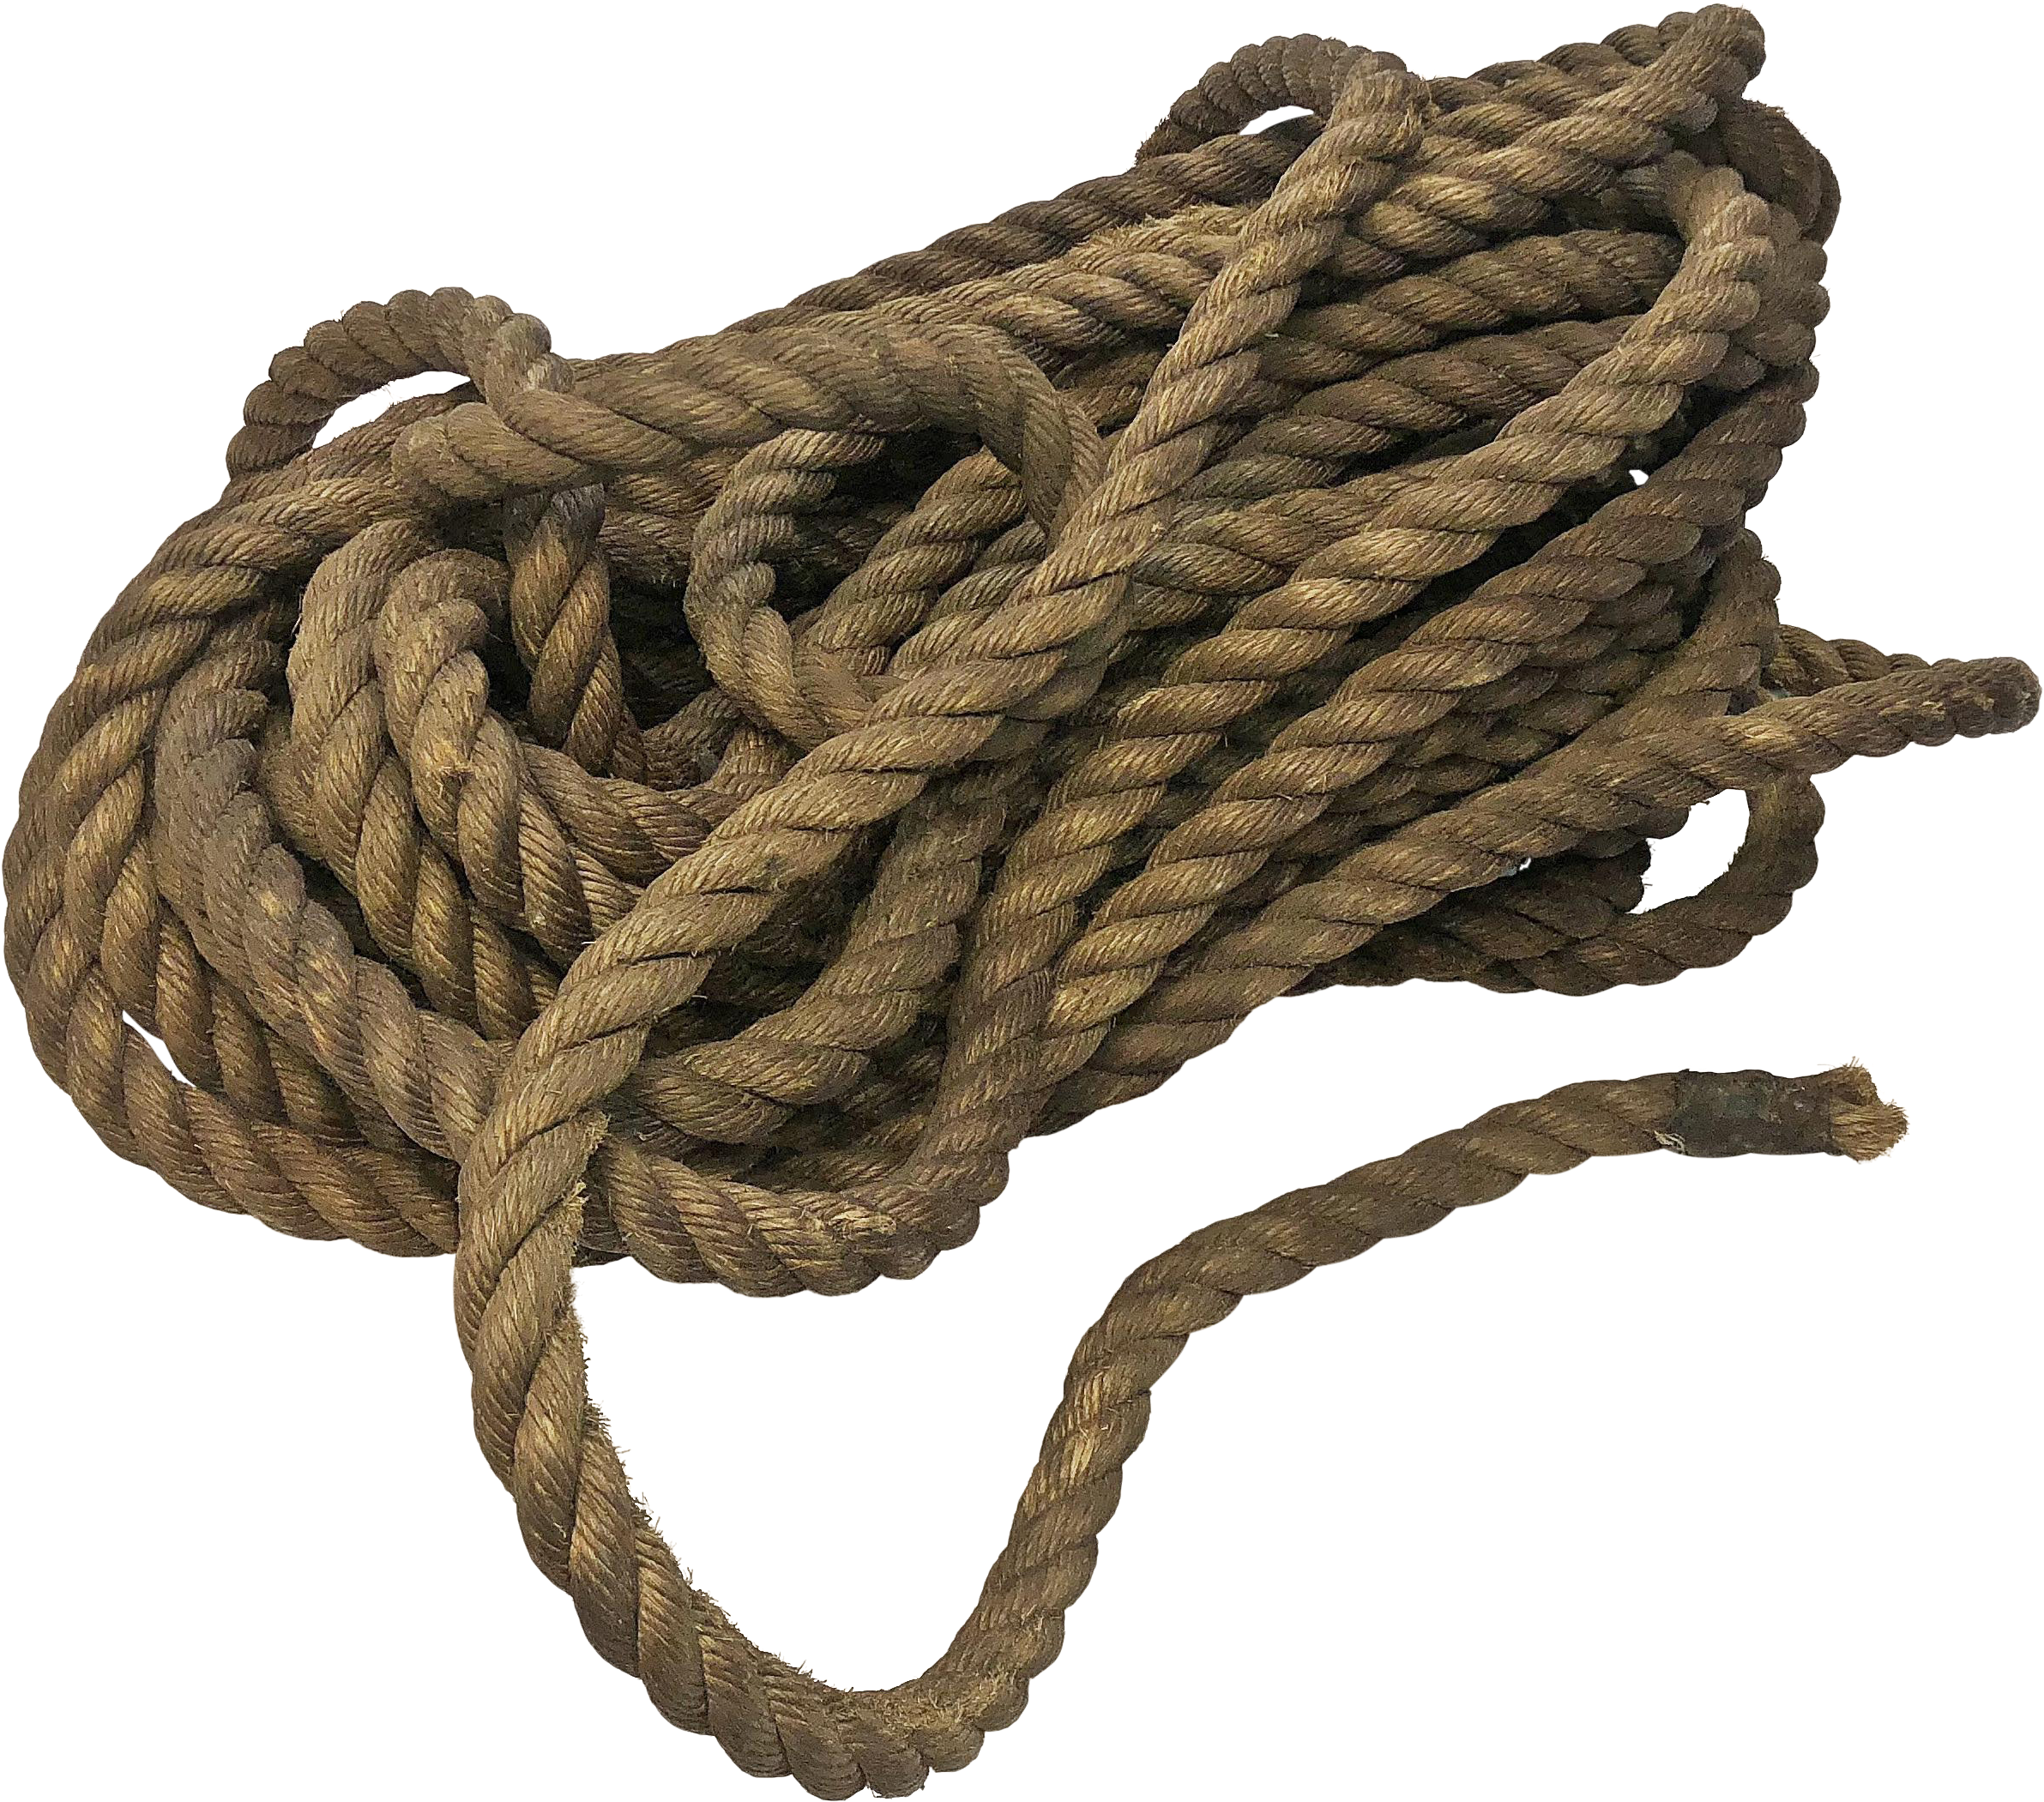 ロープ